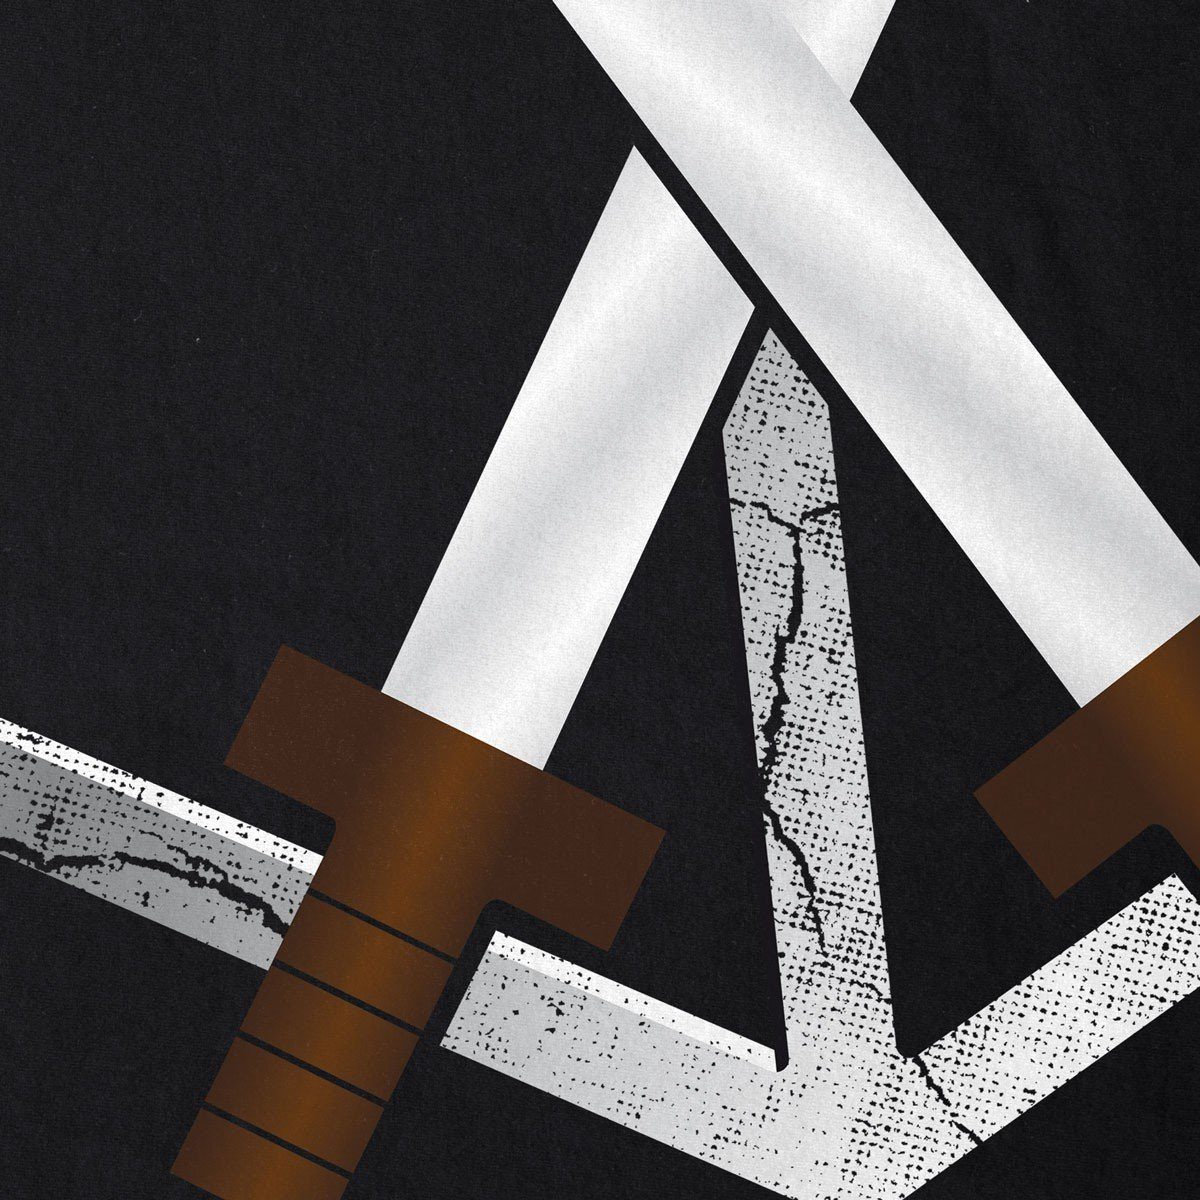 T-Shirt Eren on Riesen Emblem Herren Print-Shirt Wappen Ausbildungstruppe AoT style3 Attack Titan